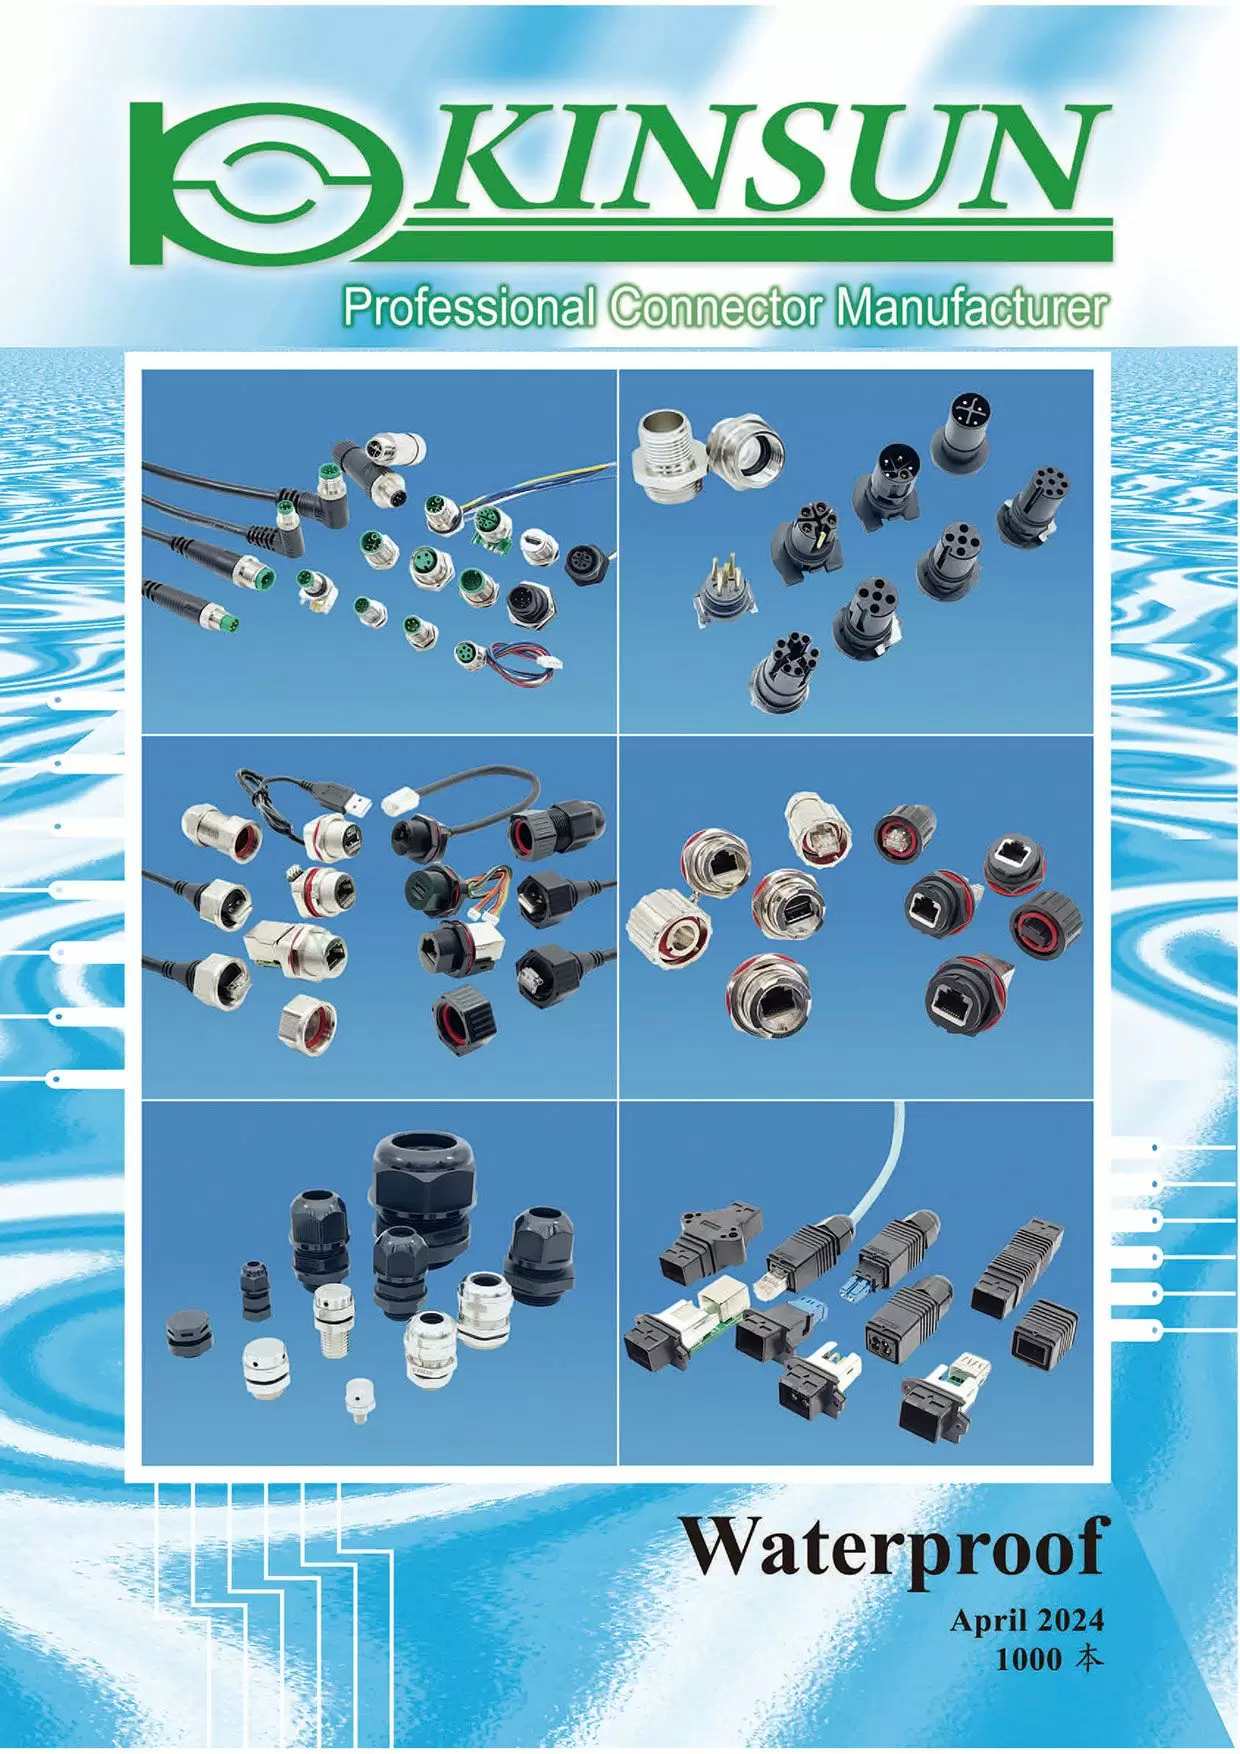 Katalog vodotěsných konektorů KINSUN